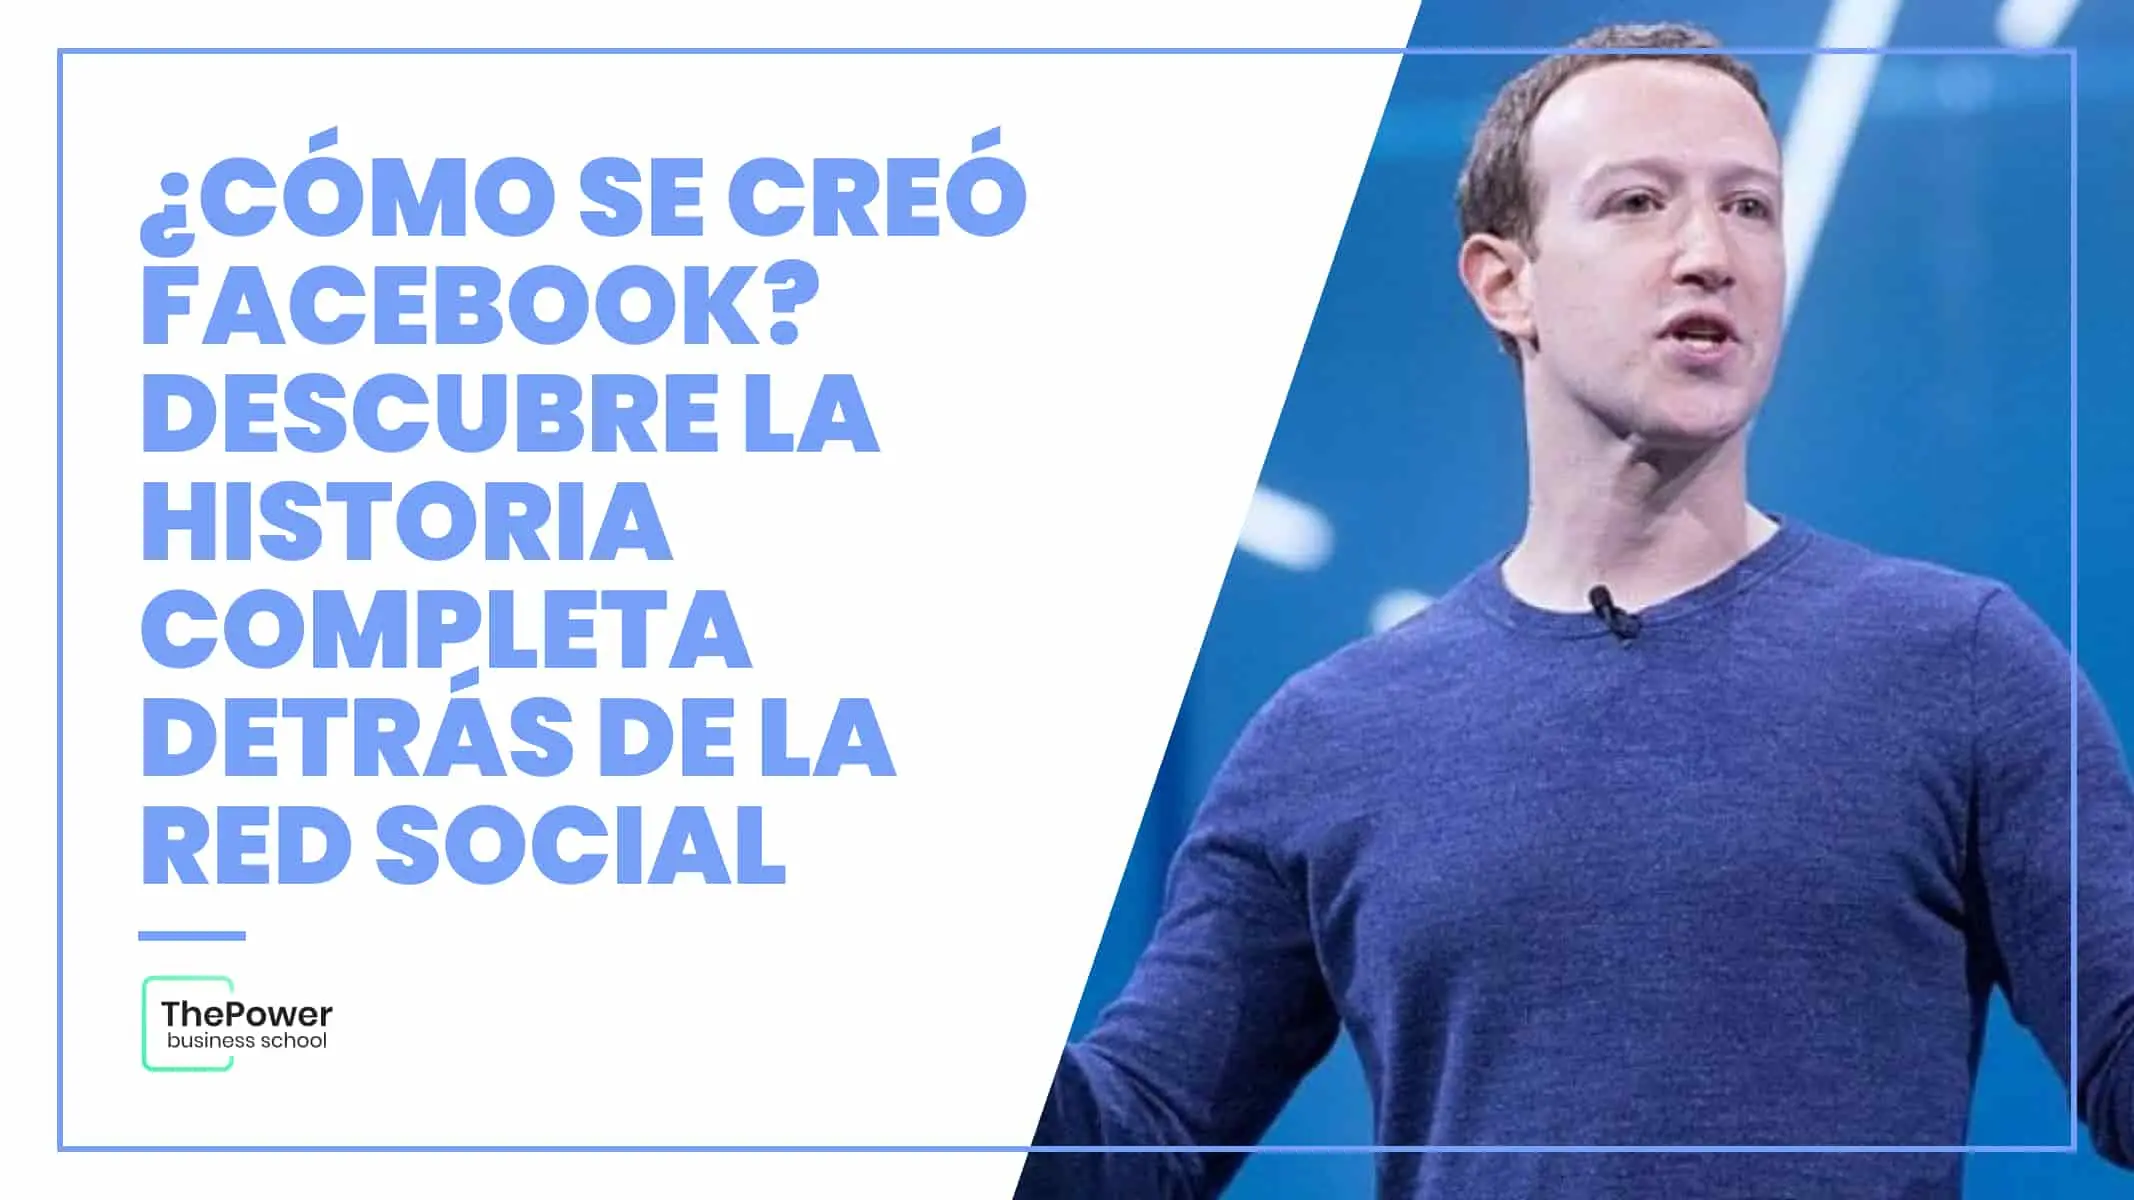 mark zuckerberg crea inteligencia artificial - Cómo se le ocurrio a Mark Zuckerberg crear Facebook